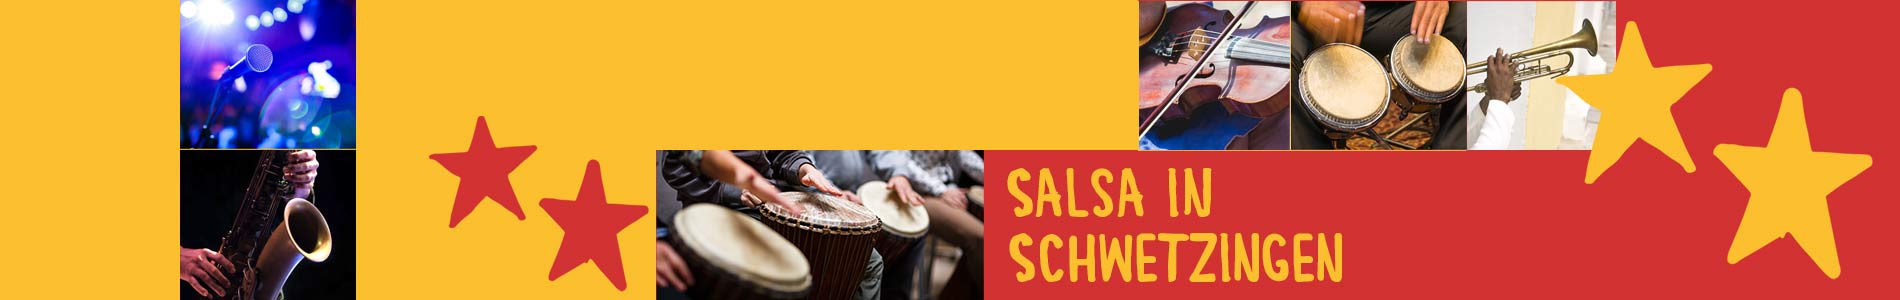 Salsa in Schwetzingen – Salsa lernen und tanzen, Tanzkurse, Partys, Veranstaltungen